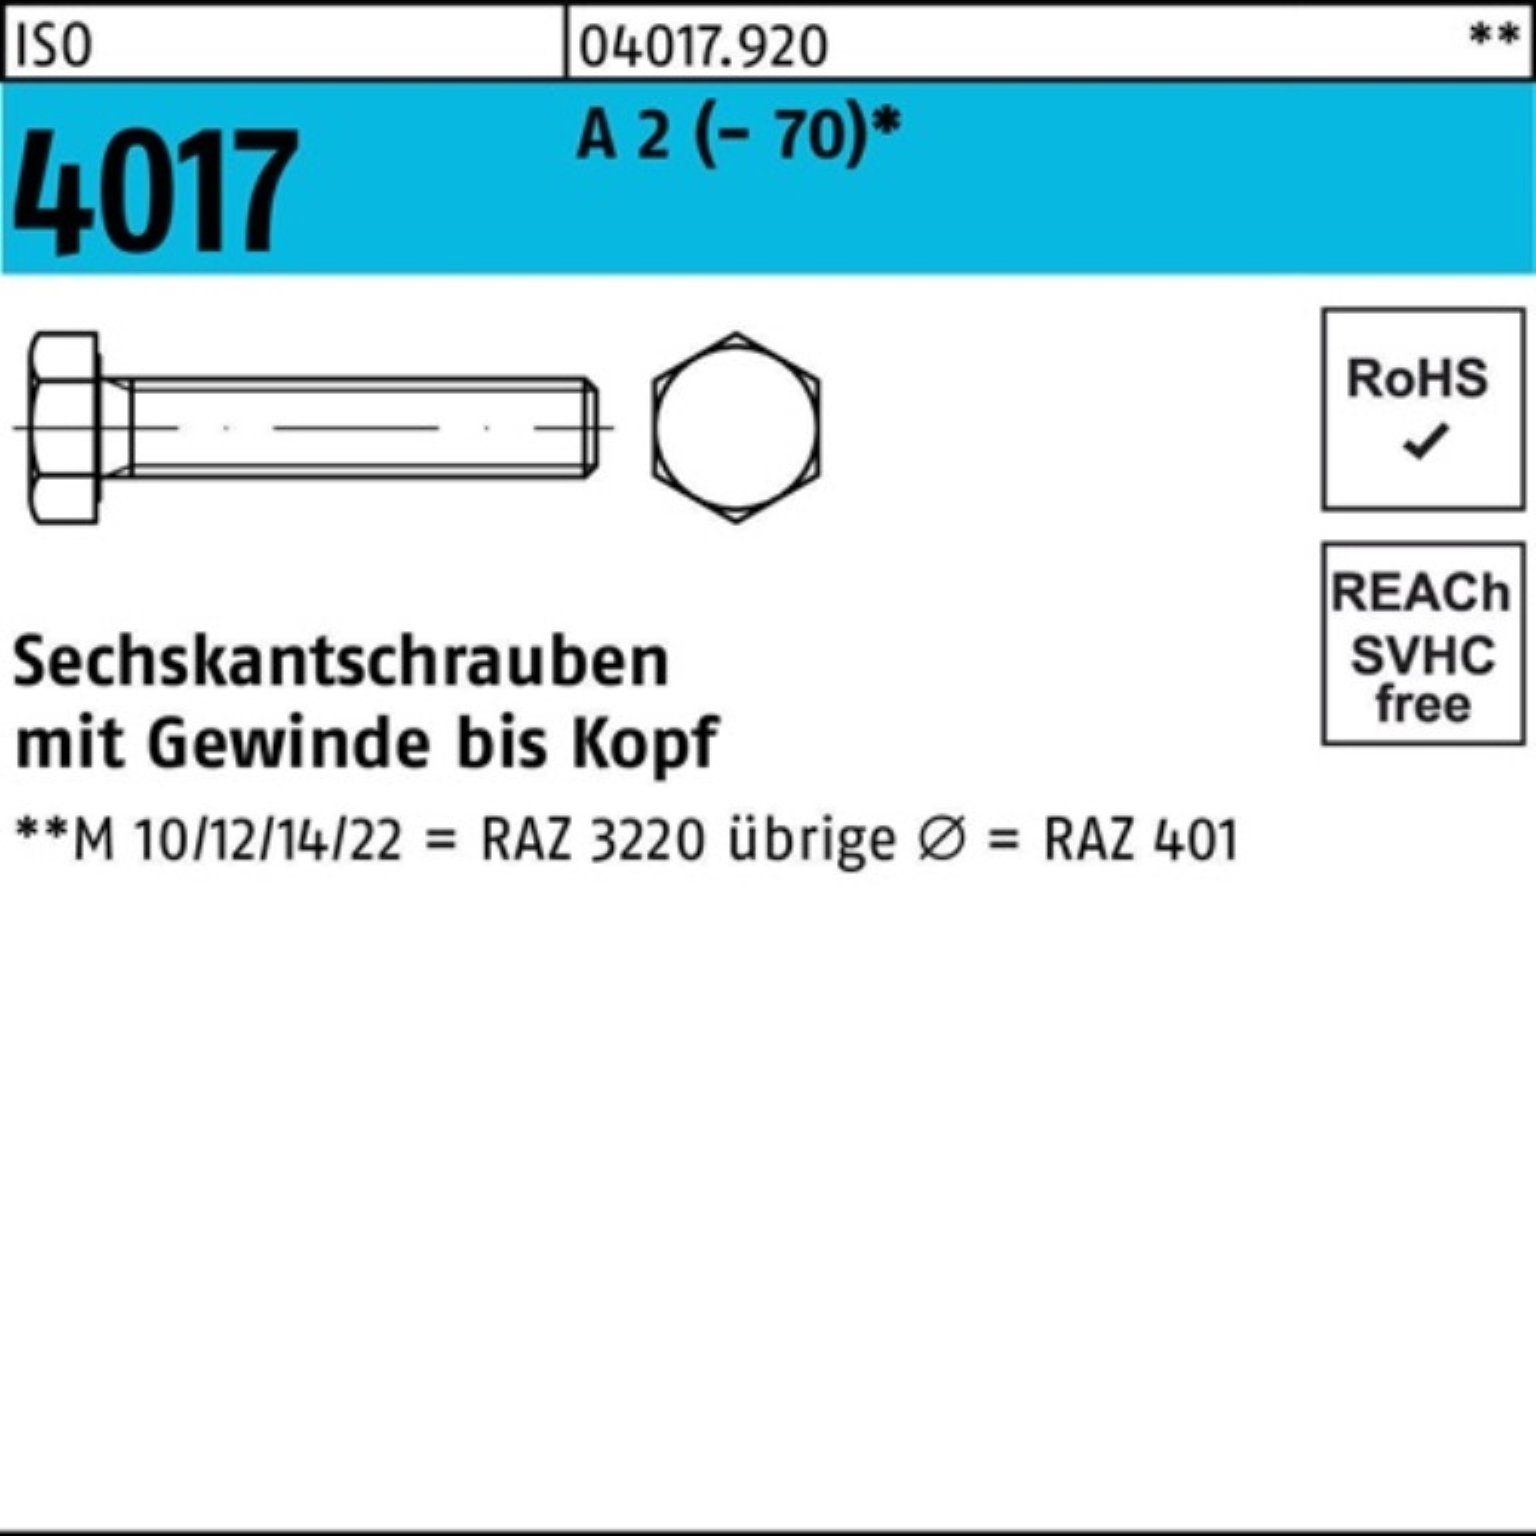 Bufab Sechskantschraube 100er Pack Sechskantschraube ISO 4017 VG M3x 20 A 2 (70) 100 Stück